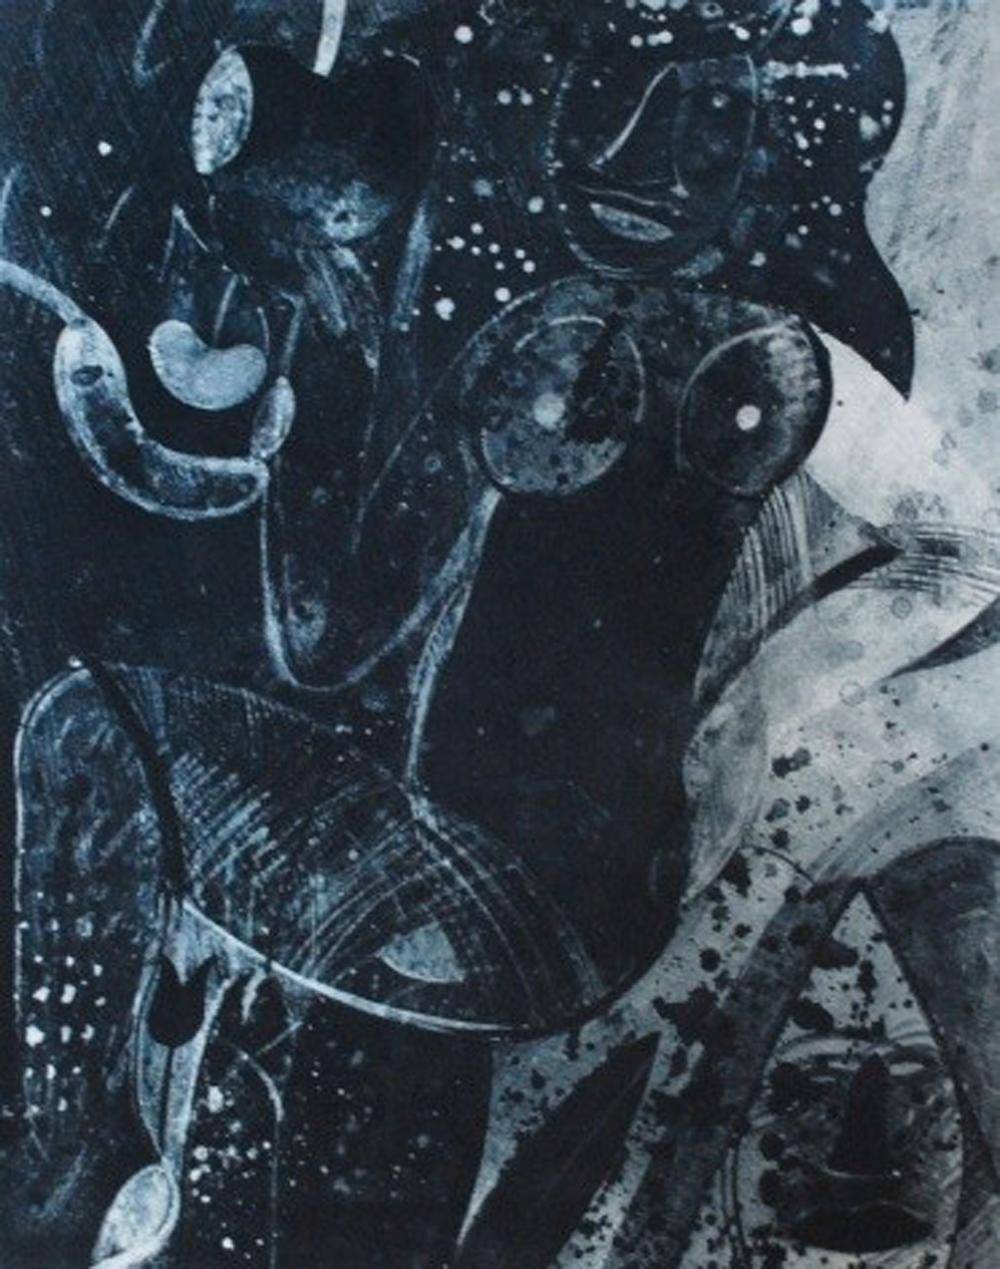 Bruja chachalaca, 2010. Roger von Gunten  (1933). Fotograbado sobre papel.  50 x 40 cm. Nº inv. 5175.